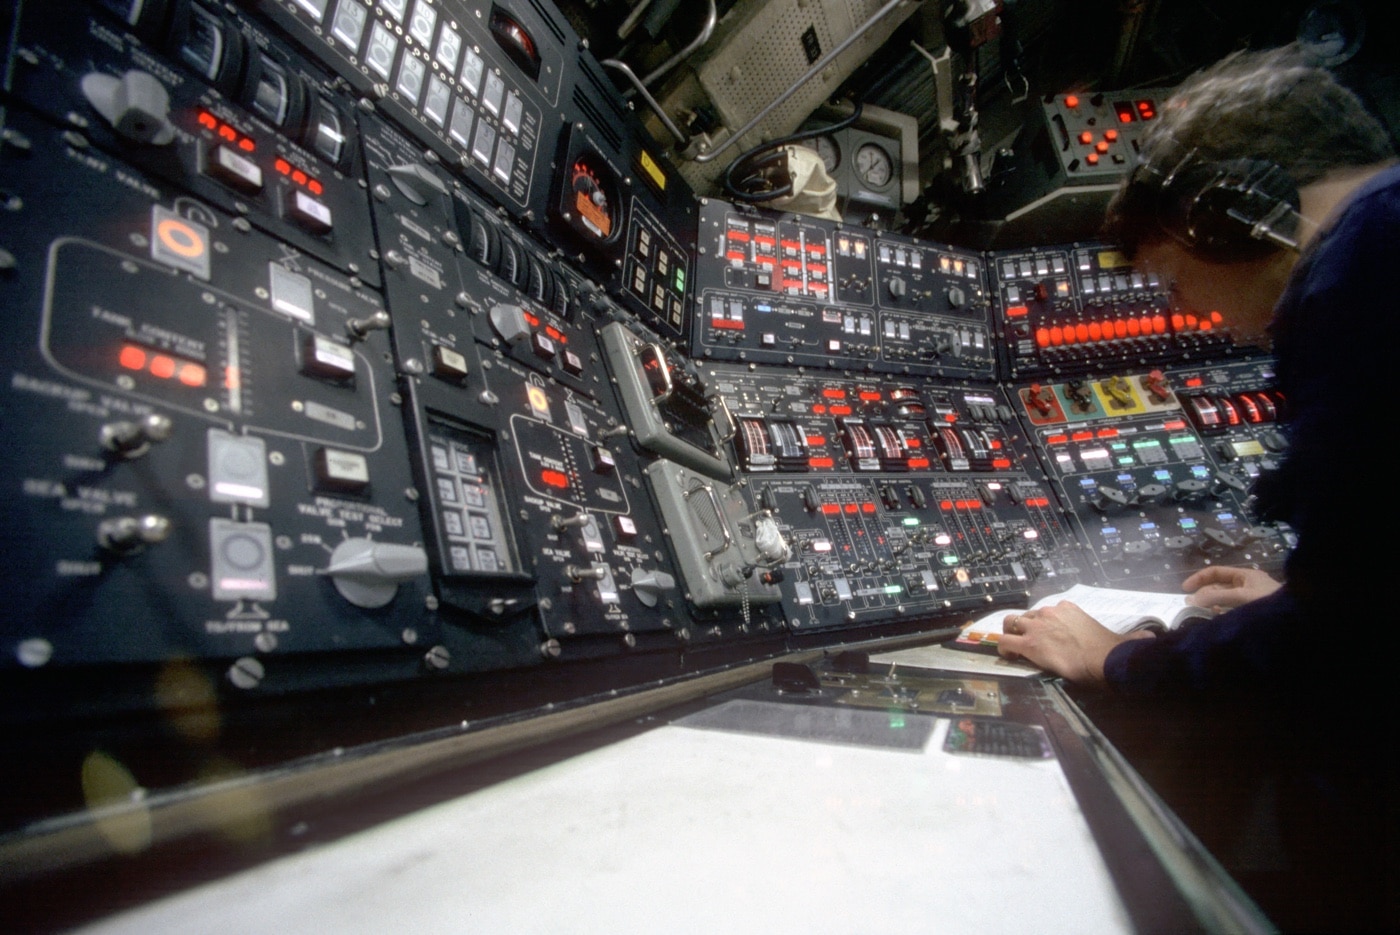 ballast control panel on USS Pennsylvania